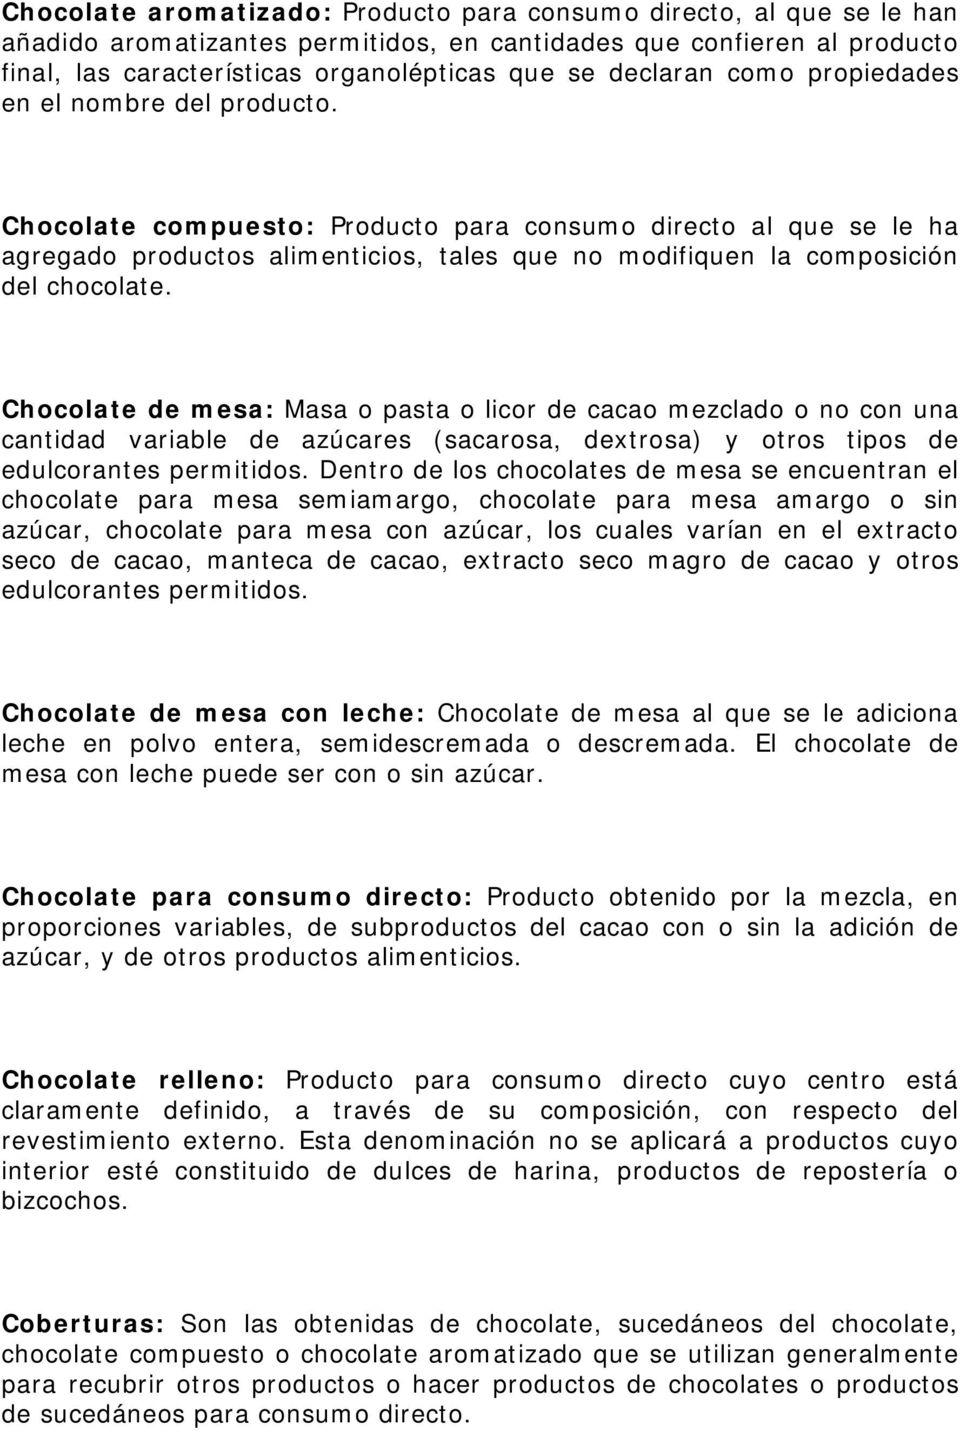 Chocolate compuesto: Producto para consumo directo al que se le ha agregado productos alimenticios, tales que no modifiquen la composición del chocolate.